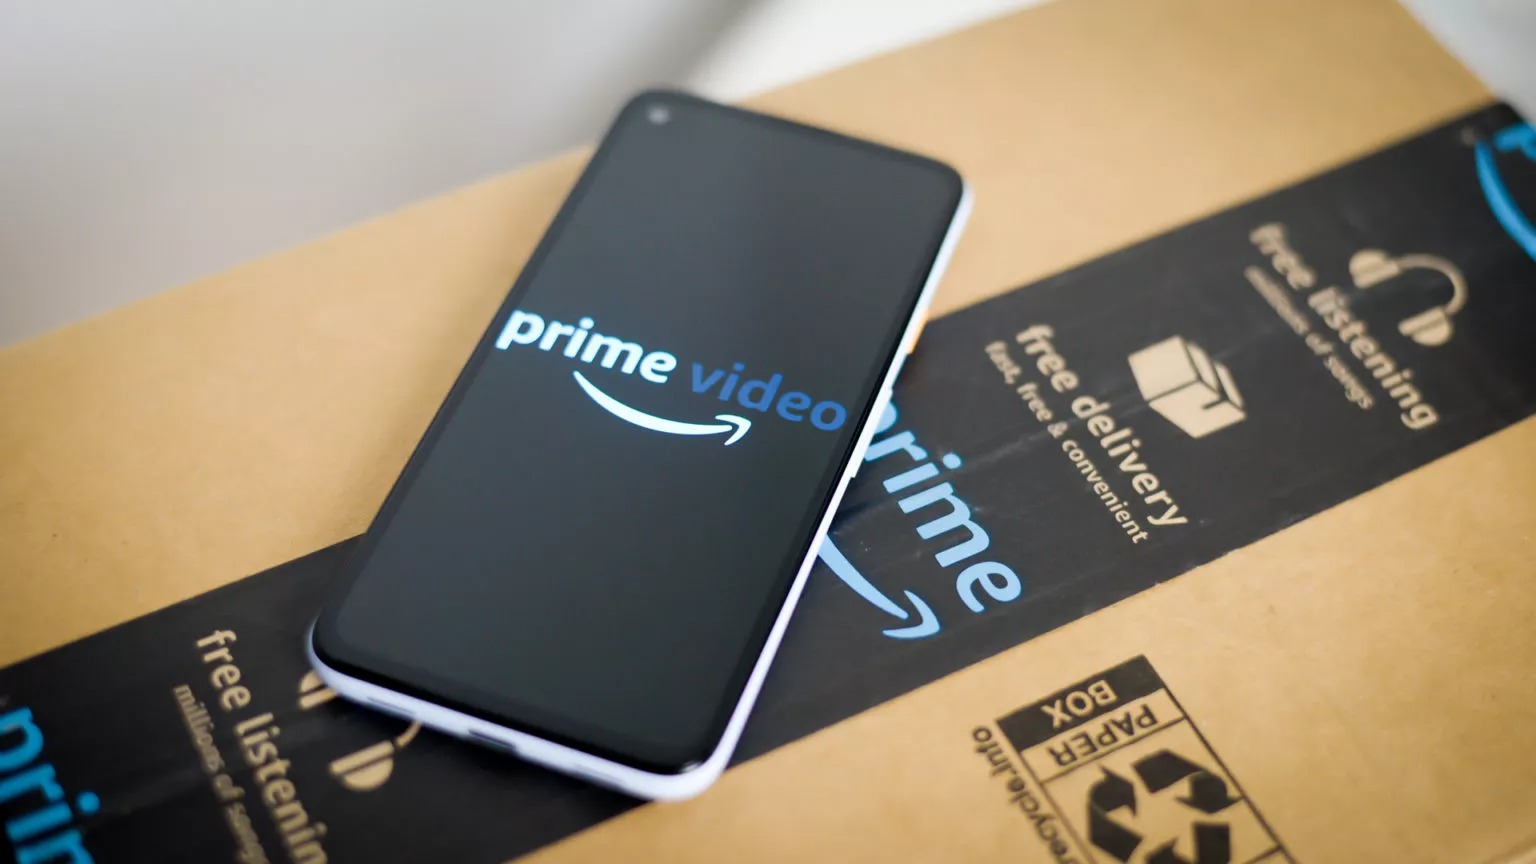 Η Amazon παρουσιάζει νέο ετήσιο συνδρομητικό πακέτο του Prime Video στην Ινδία με κόστος 7,3 δολάρια